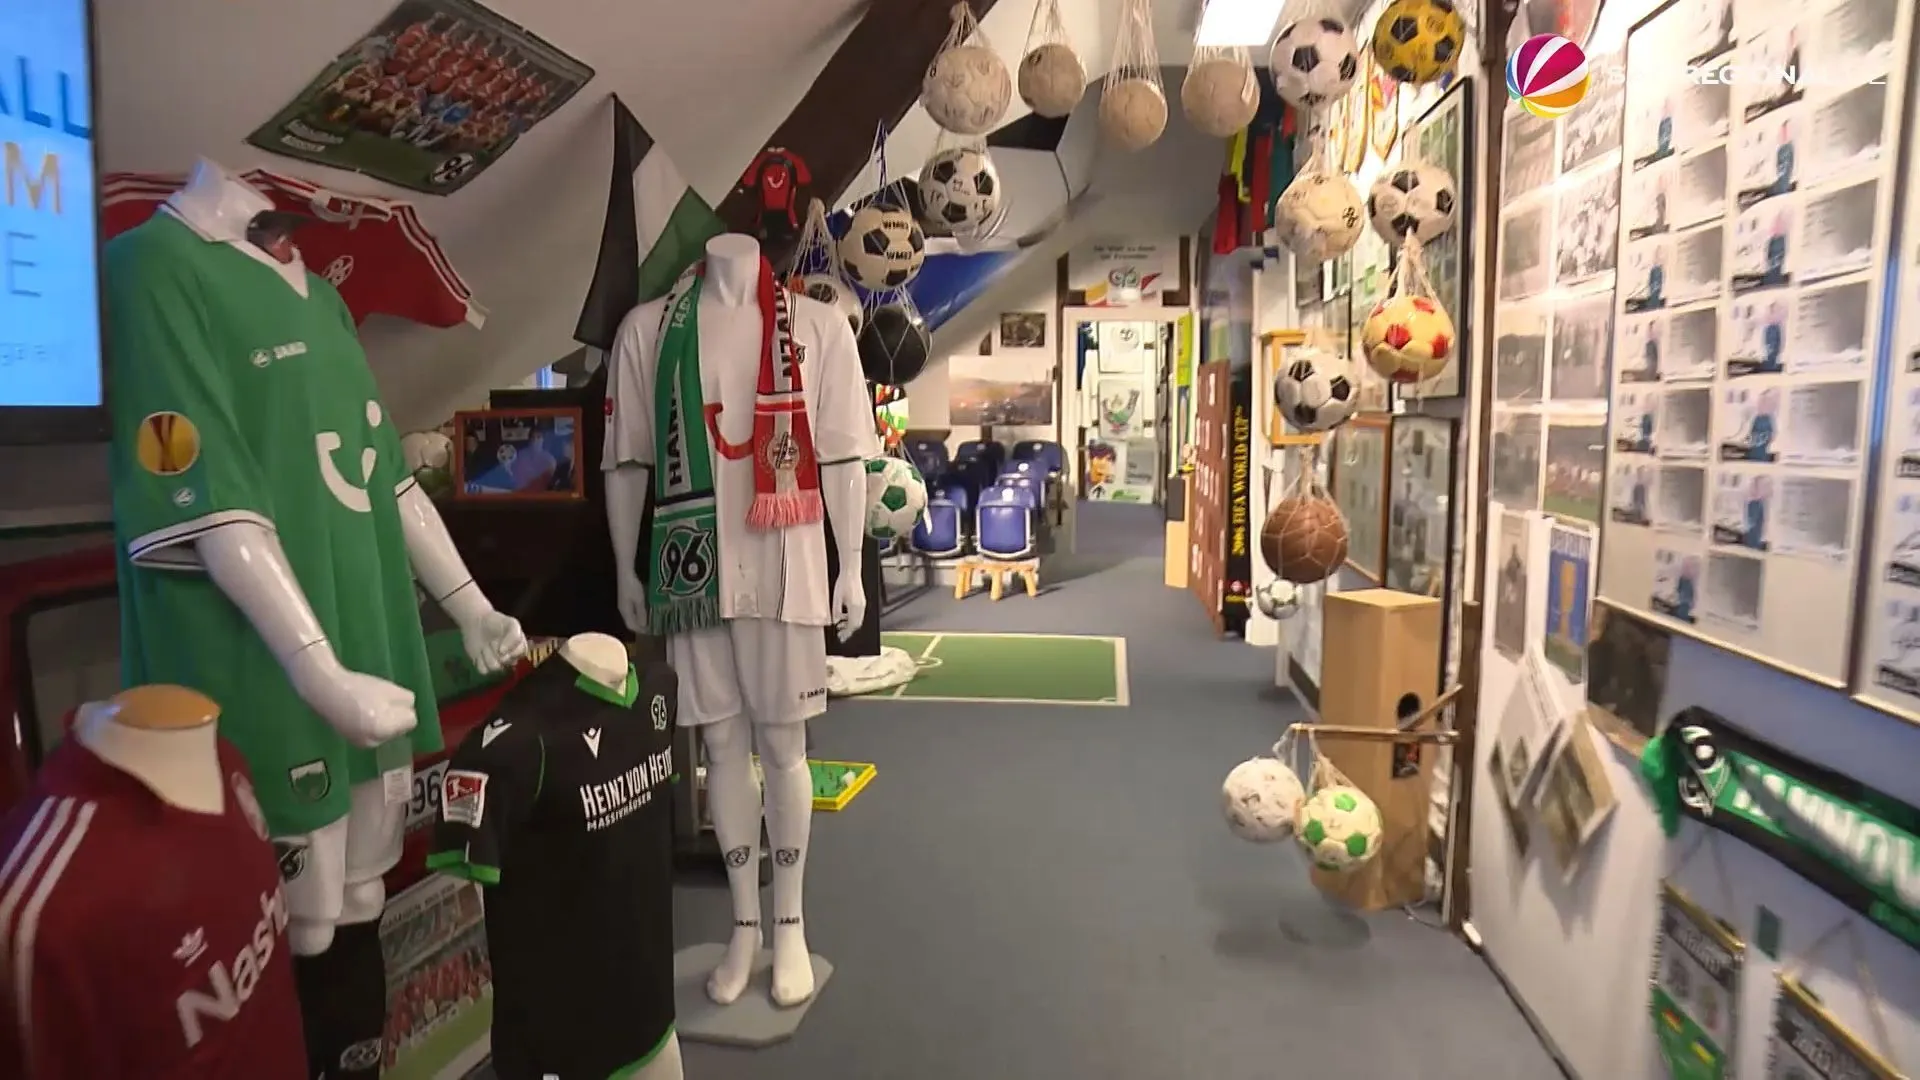 Sportsammlung Saloga: Über 10.000 Exponate in Fußballmuseum in Springe